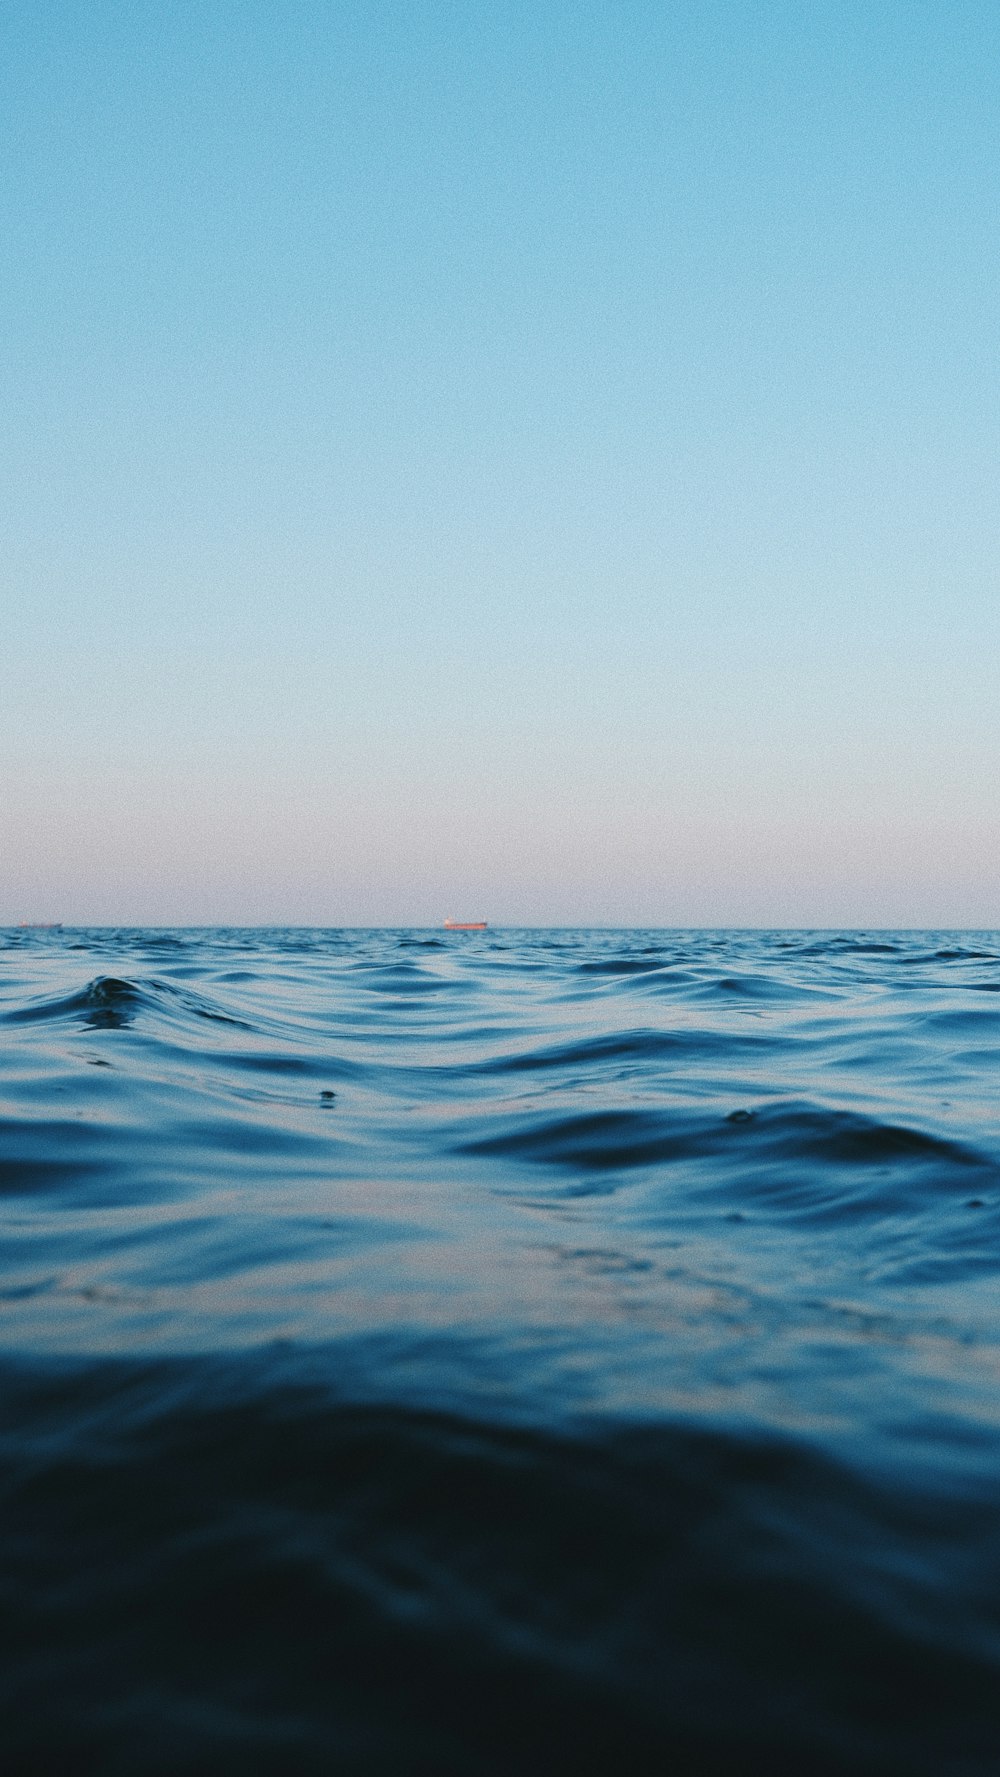 um corpo de água com ondas